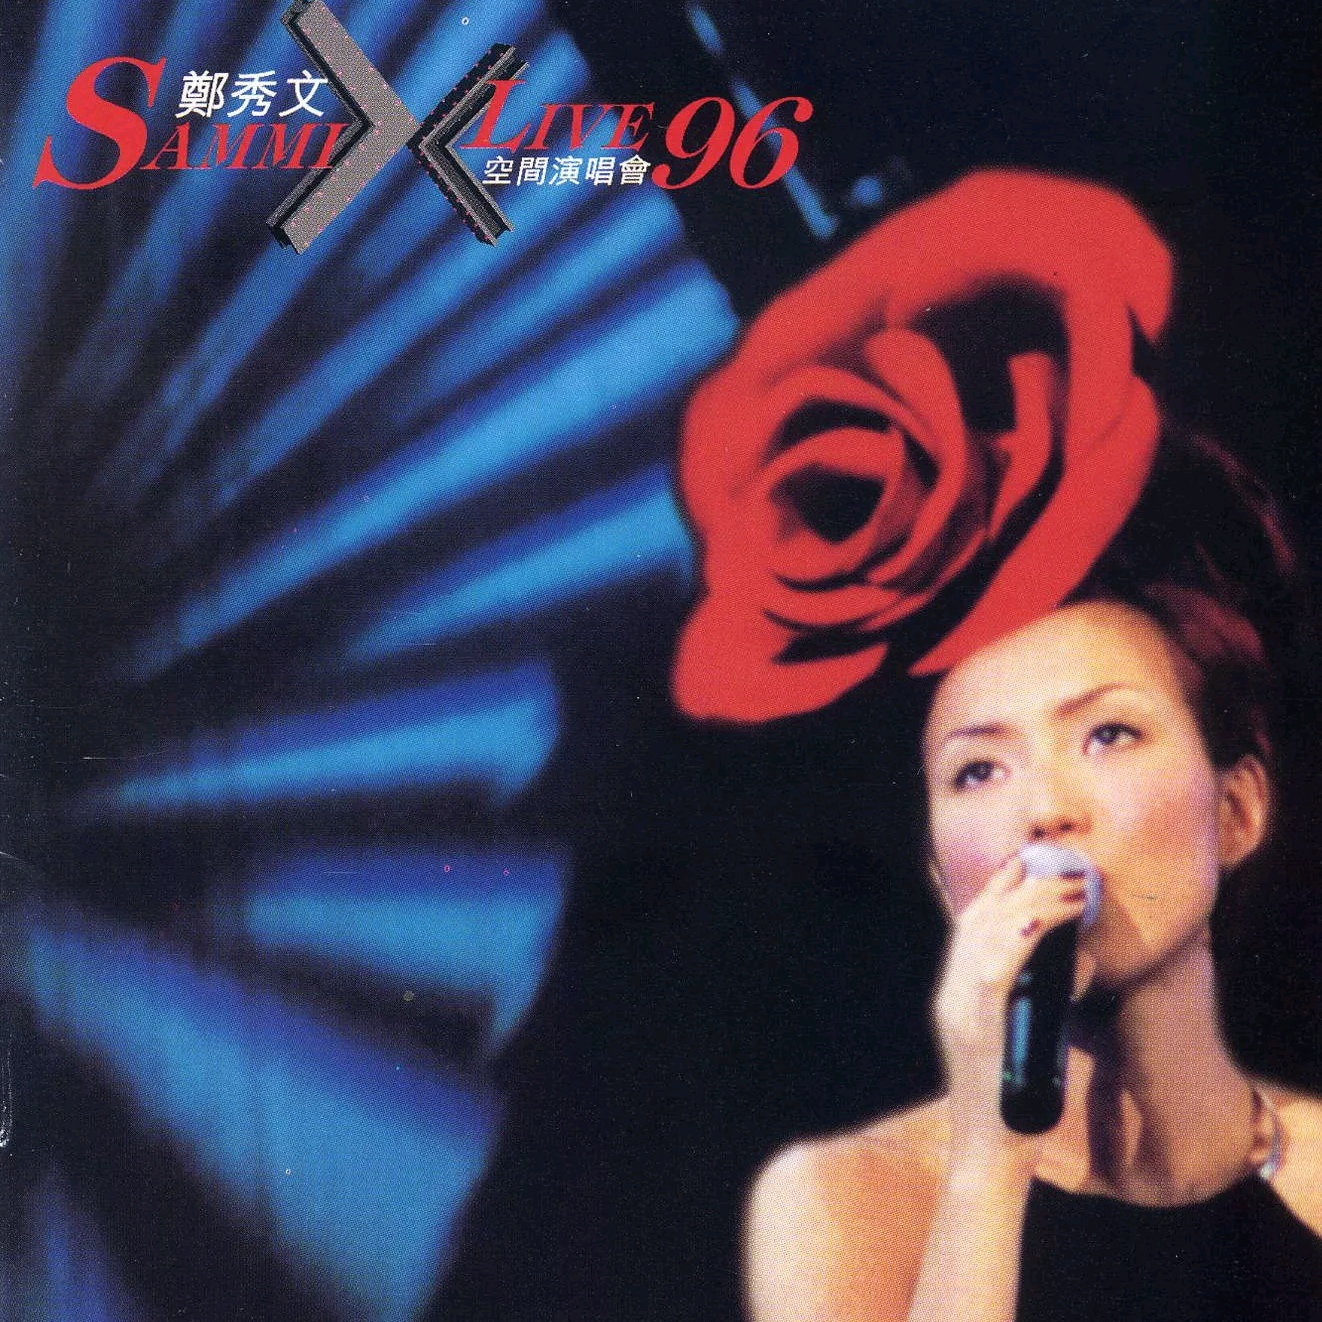 给最伤心的人(Live)歌词 歌手郑秀文-专辑X空间演唱会'96-单曲《给最伤心的人(Live)》LRC歌词下载